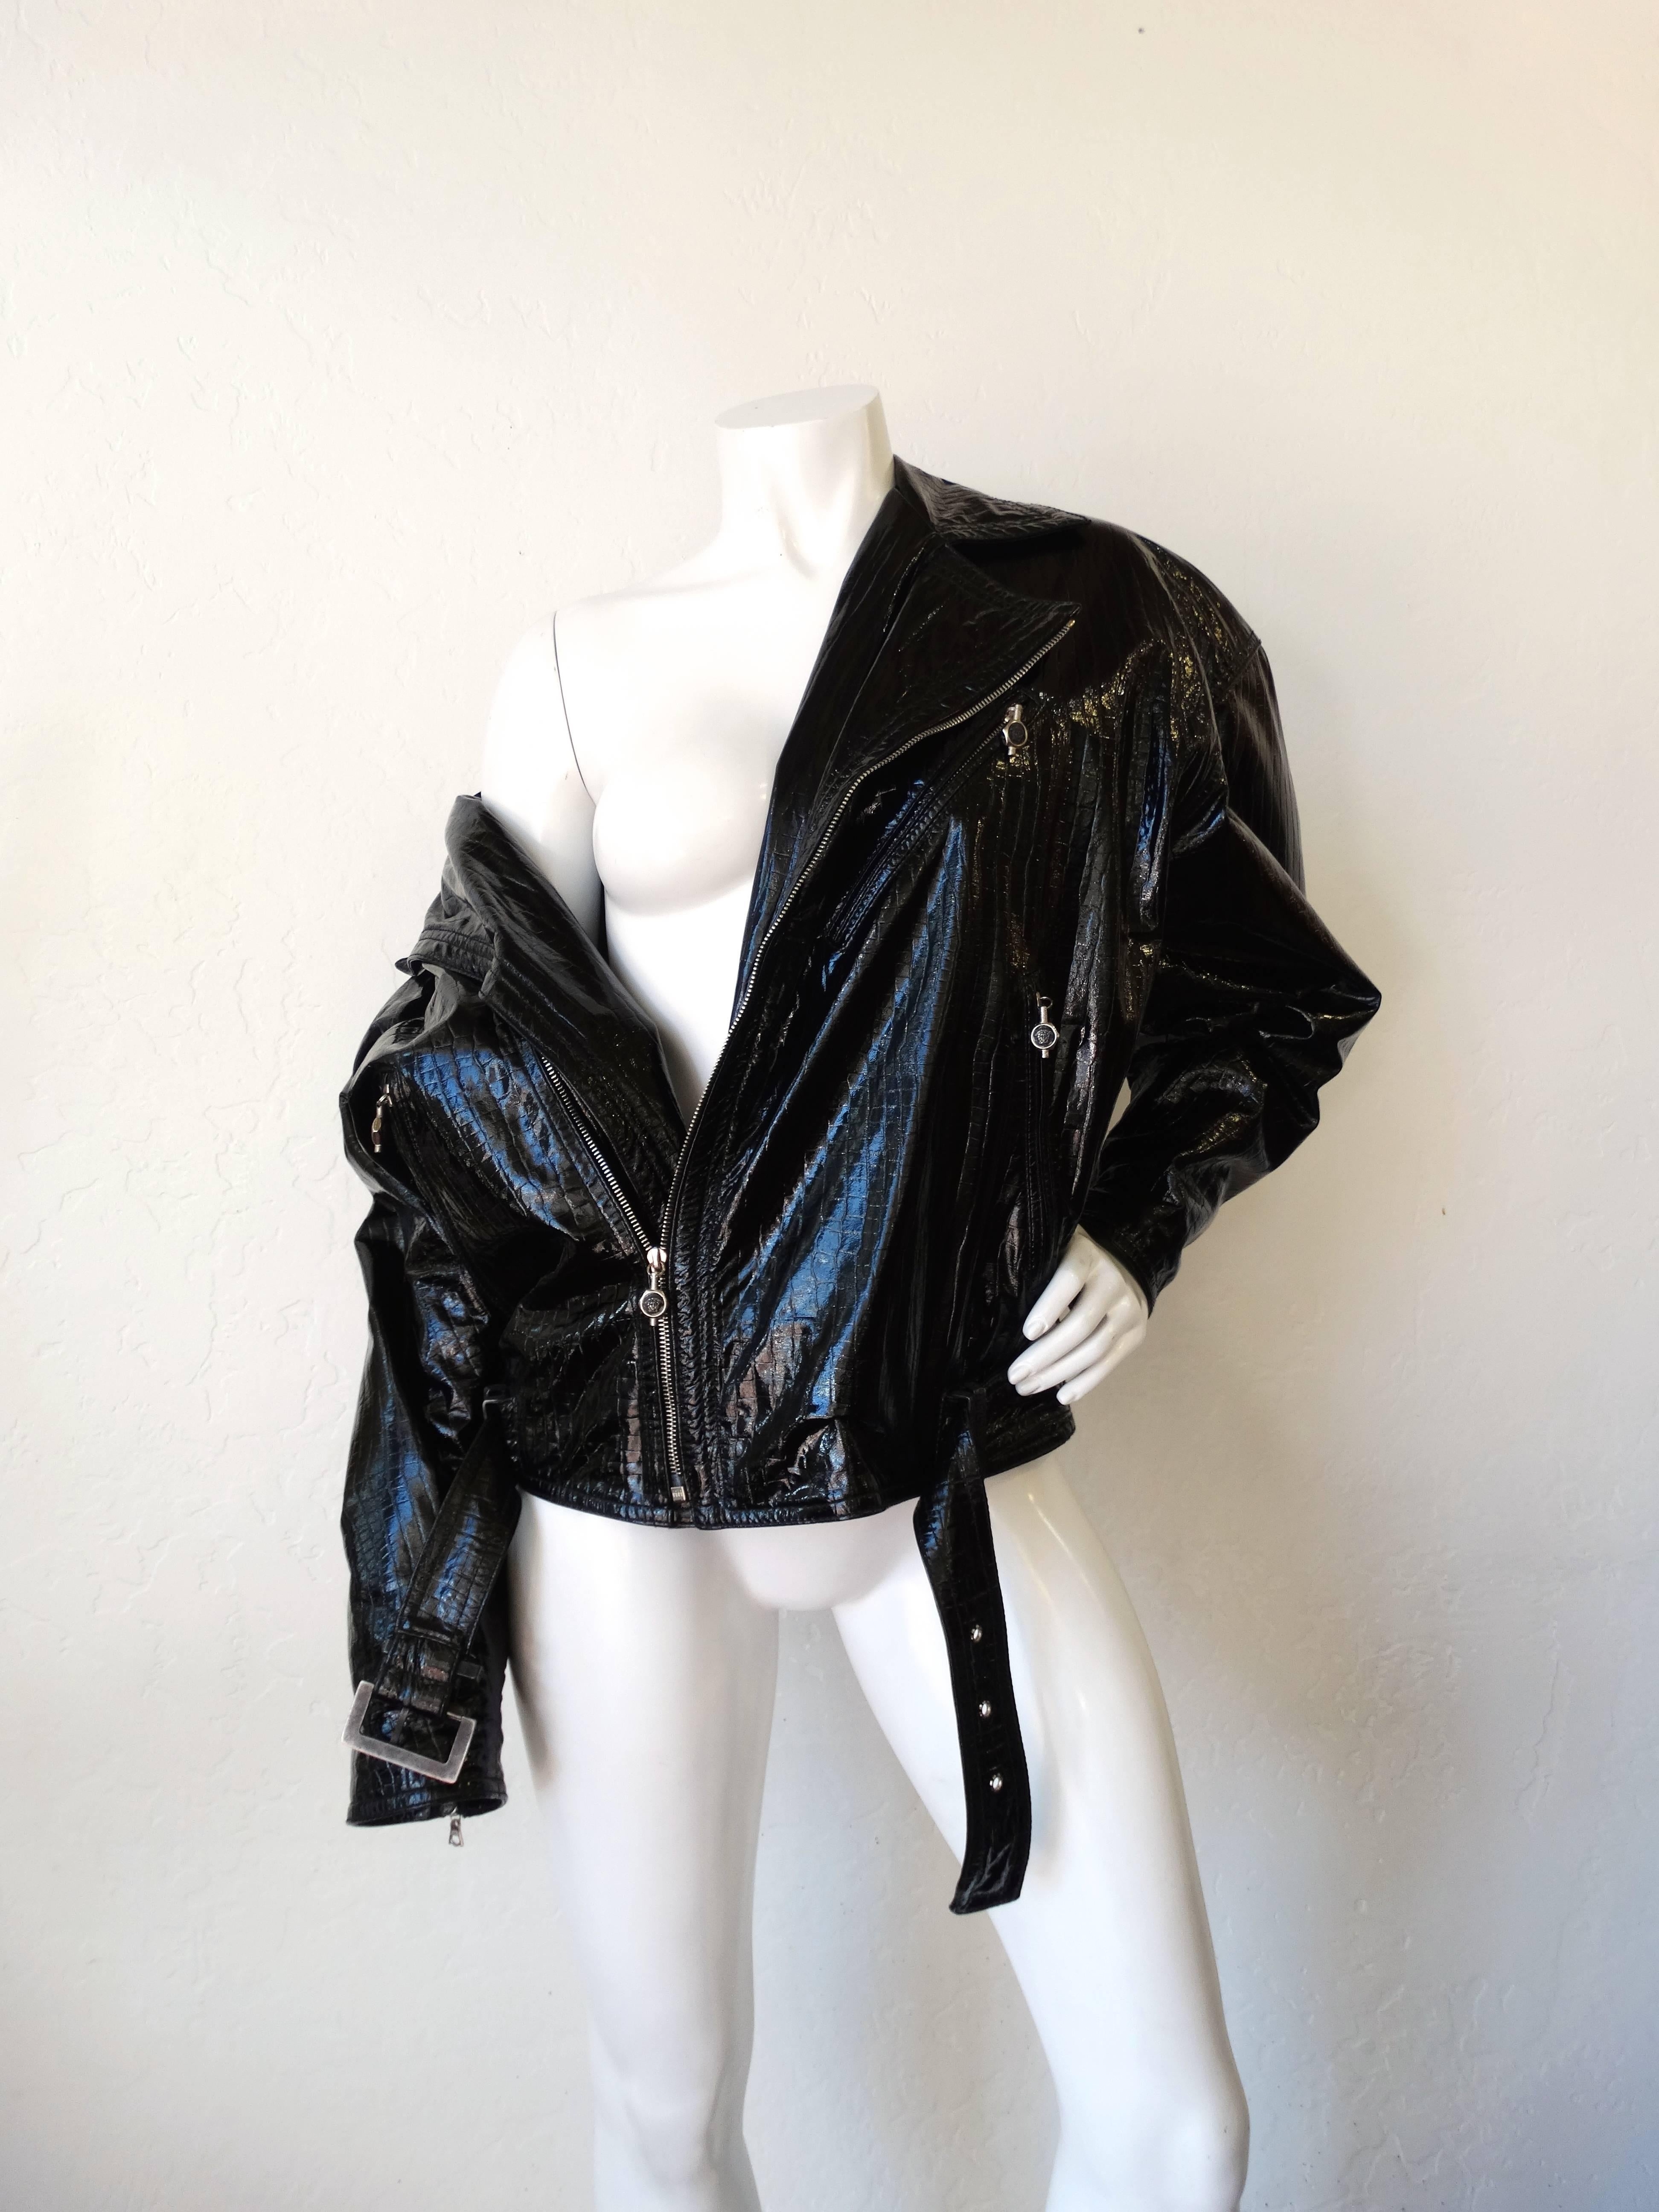 Offrez-vous une pièce emblématique de Versace des années 1980 avec notre incroyable veste de moto en cuir verni ! Réalisé en cuir verni super brillant, gaufré à l'alligator, et doublé d'un imprimé de tête de méduse Versace en rayonne dorée ! Veste